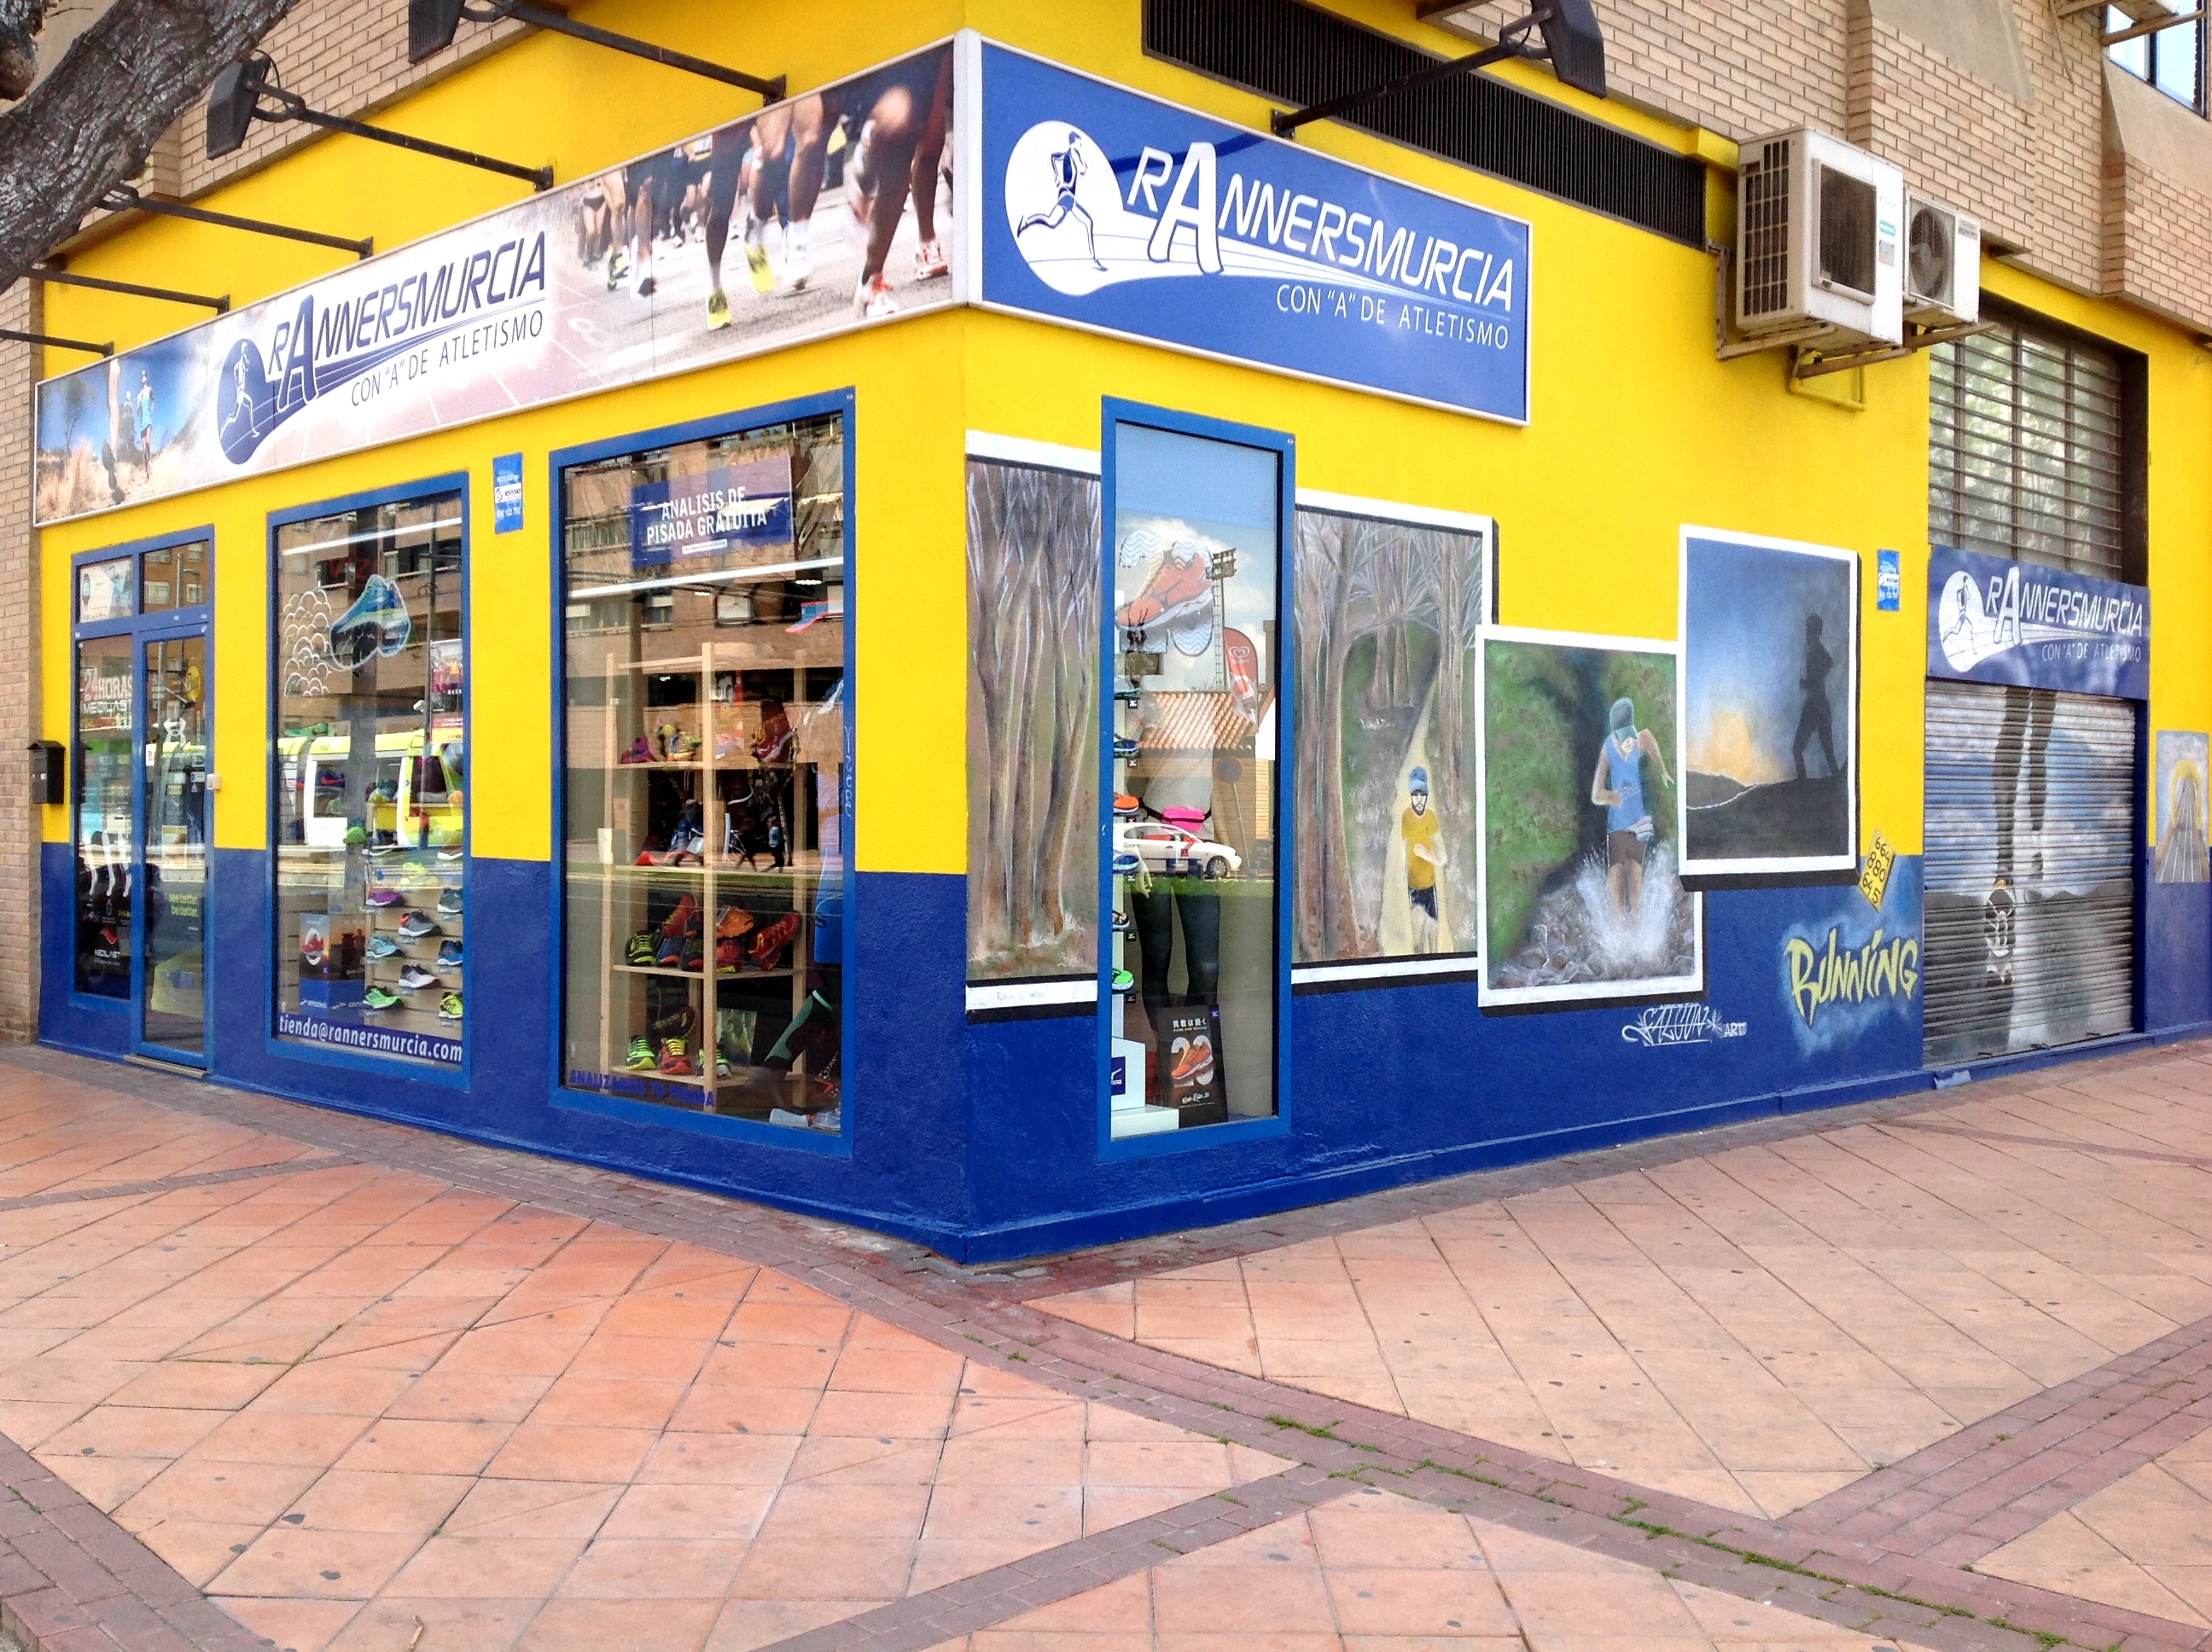 RANNERSMURCIA - Tienda especializada en running Murcia